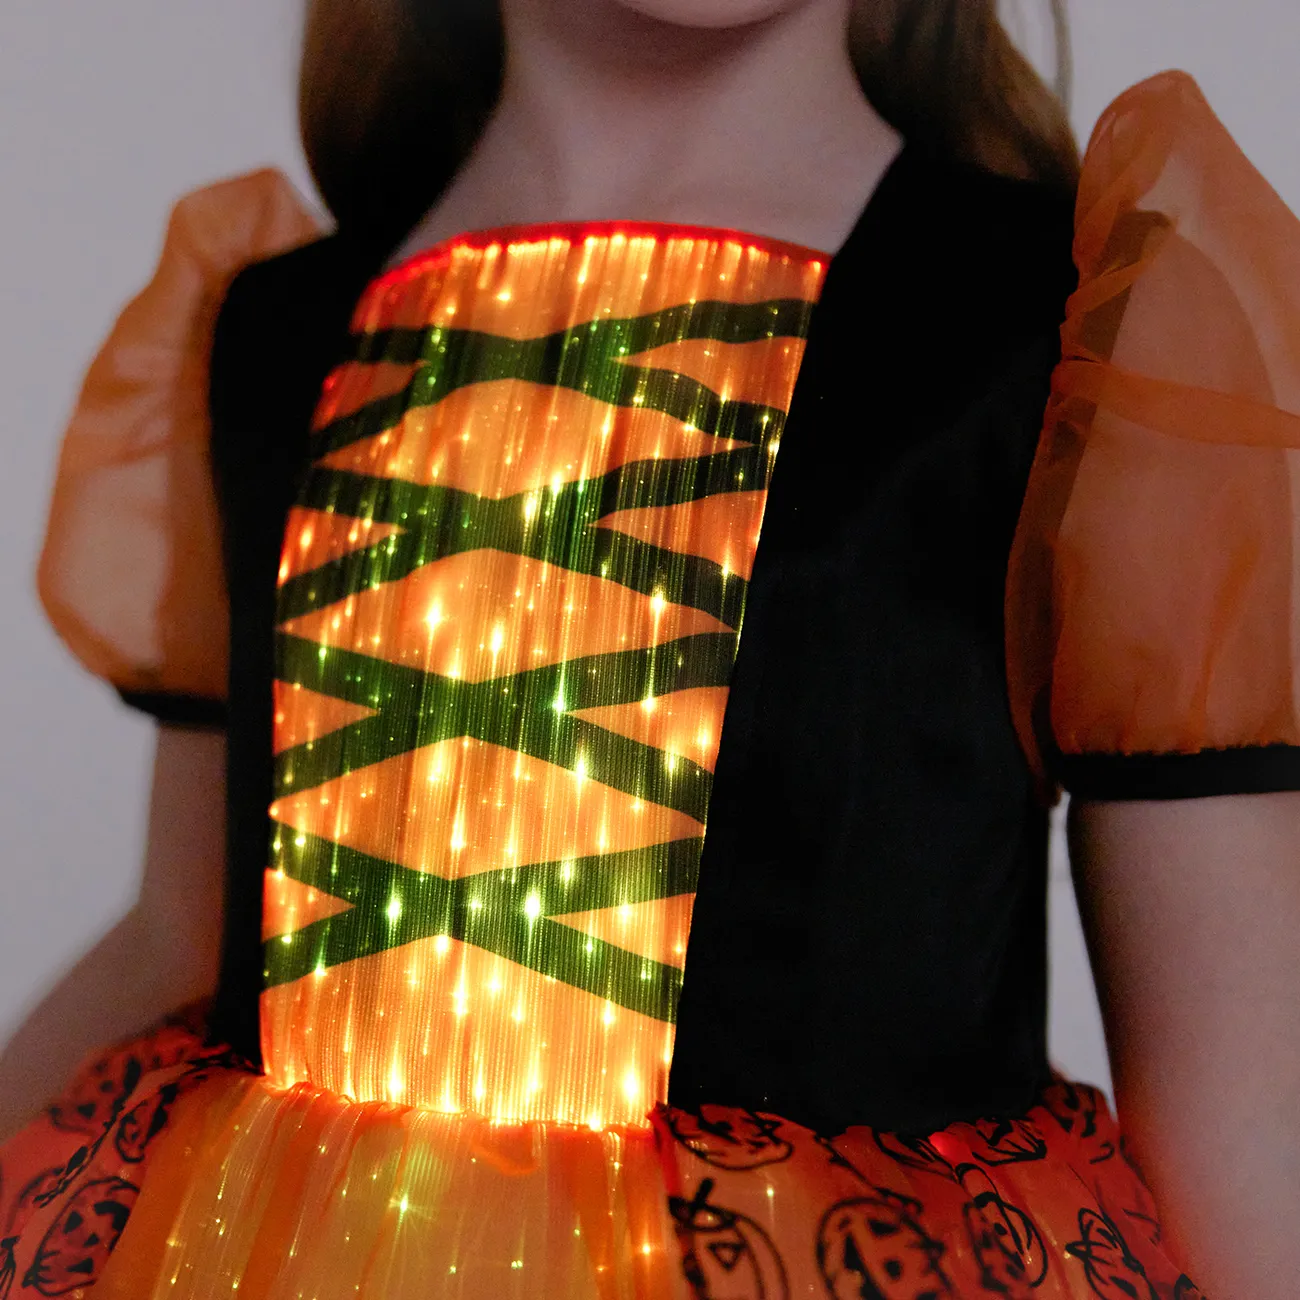 Go-Glow Halloween Iluminador Vestido de Abóbora com Saia Iluminada, Incluindo Controlador (Built-In Battery) Laranja big image 1